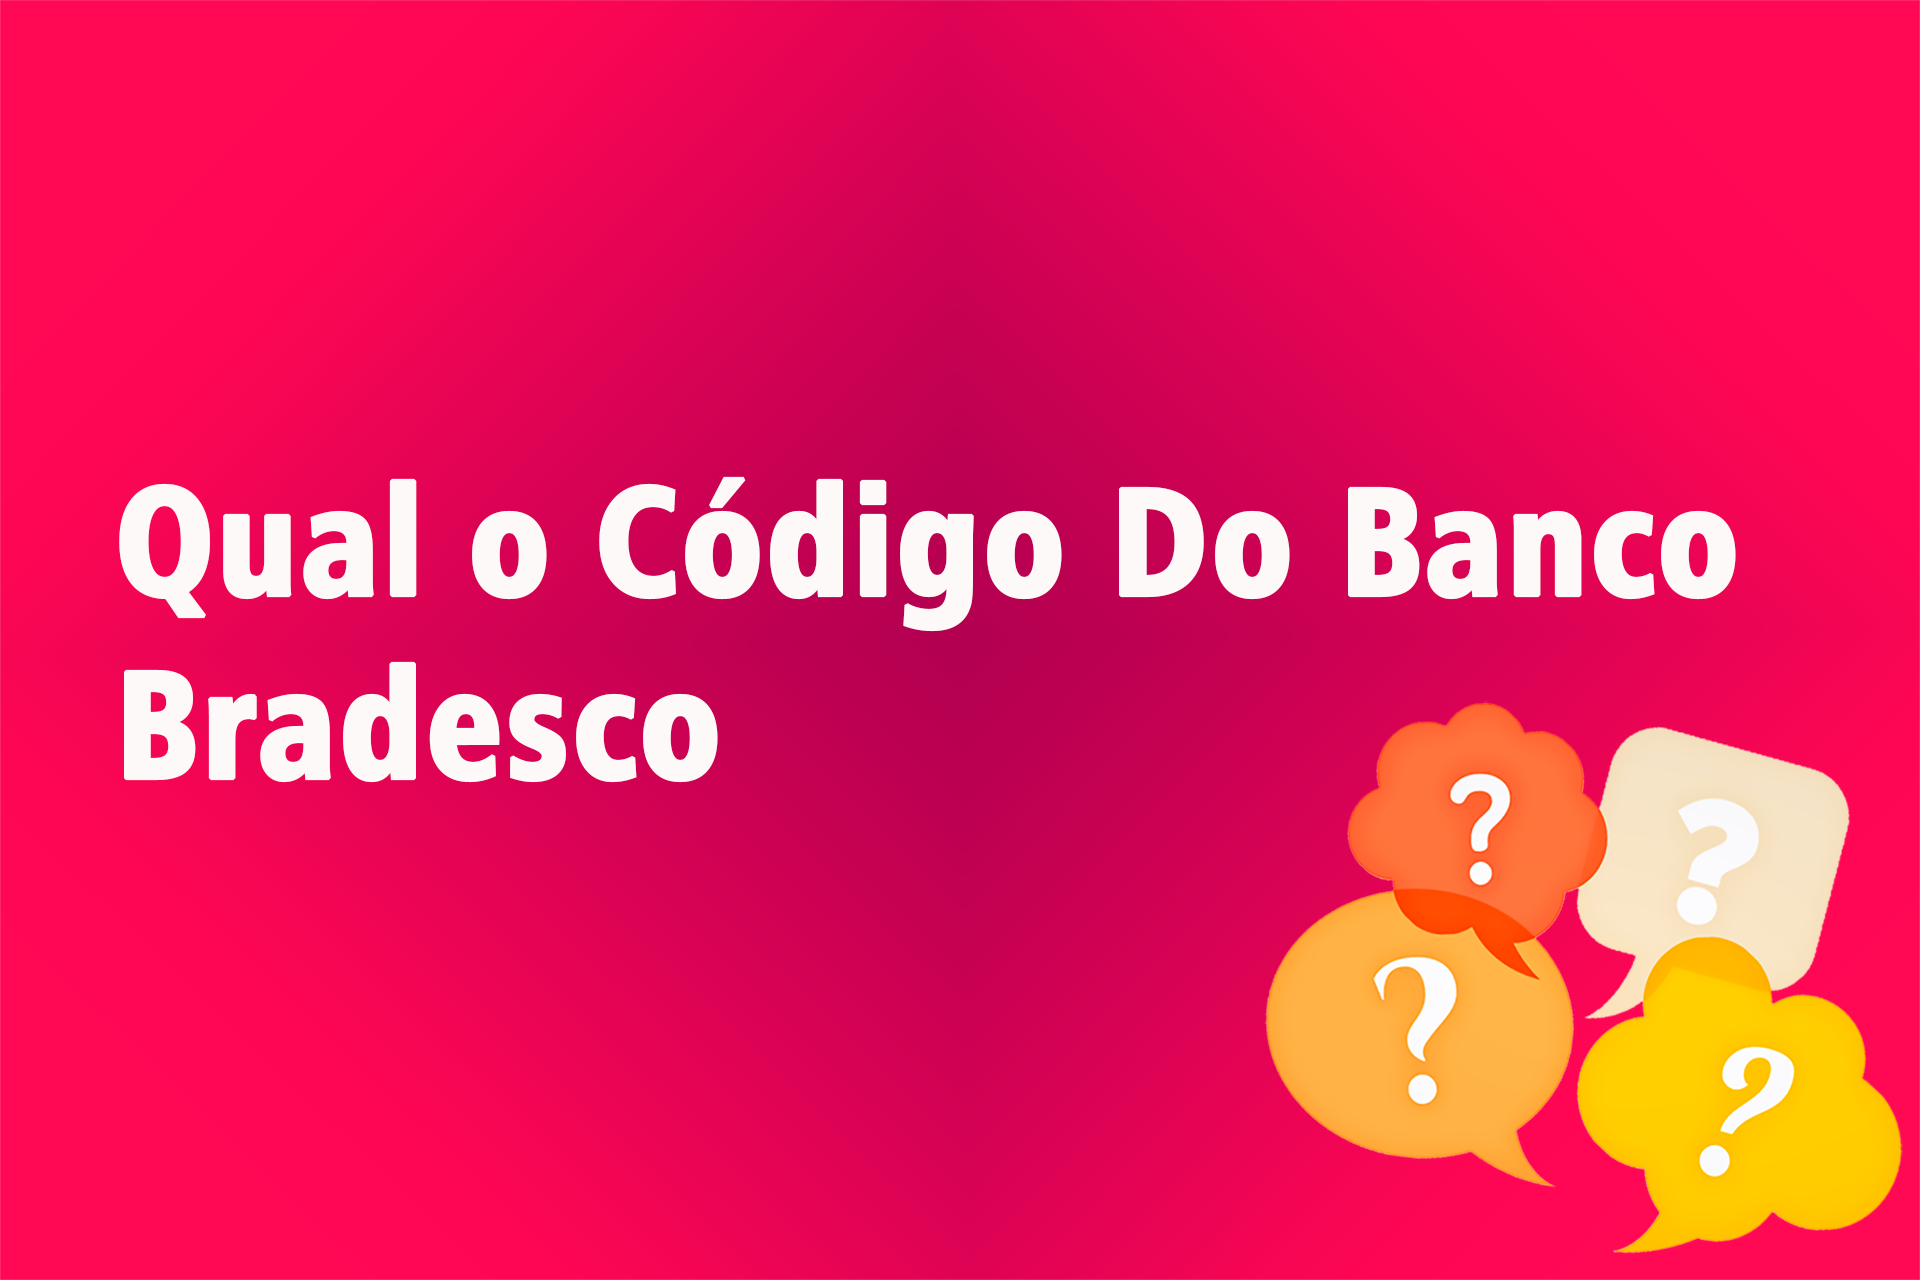 Qual o Código Do Banco Bradesco?